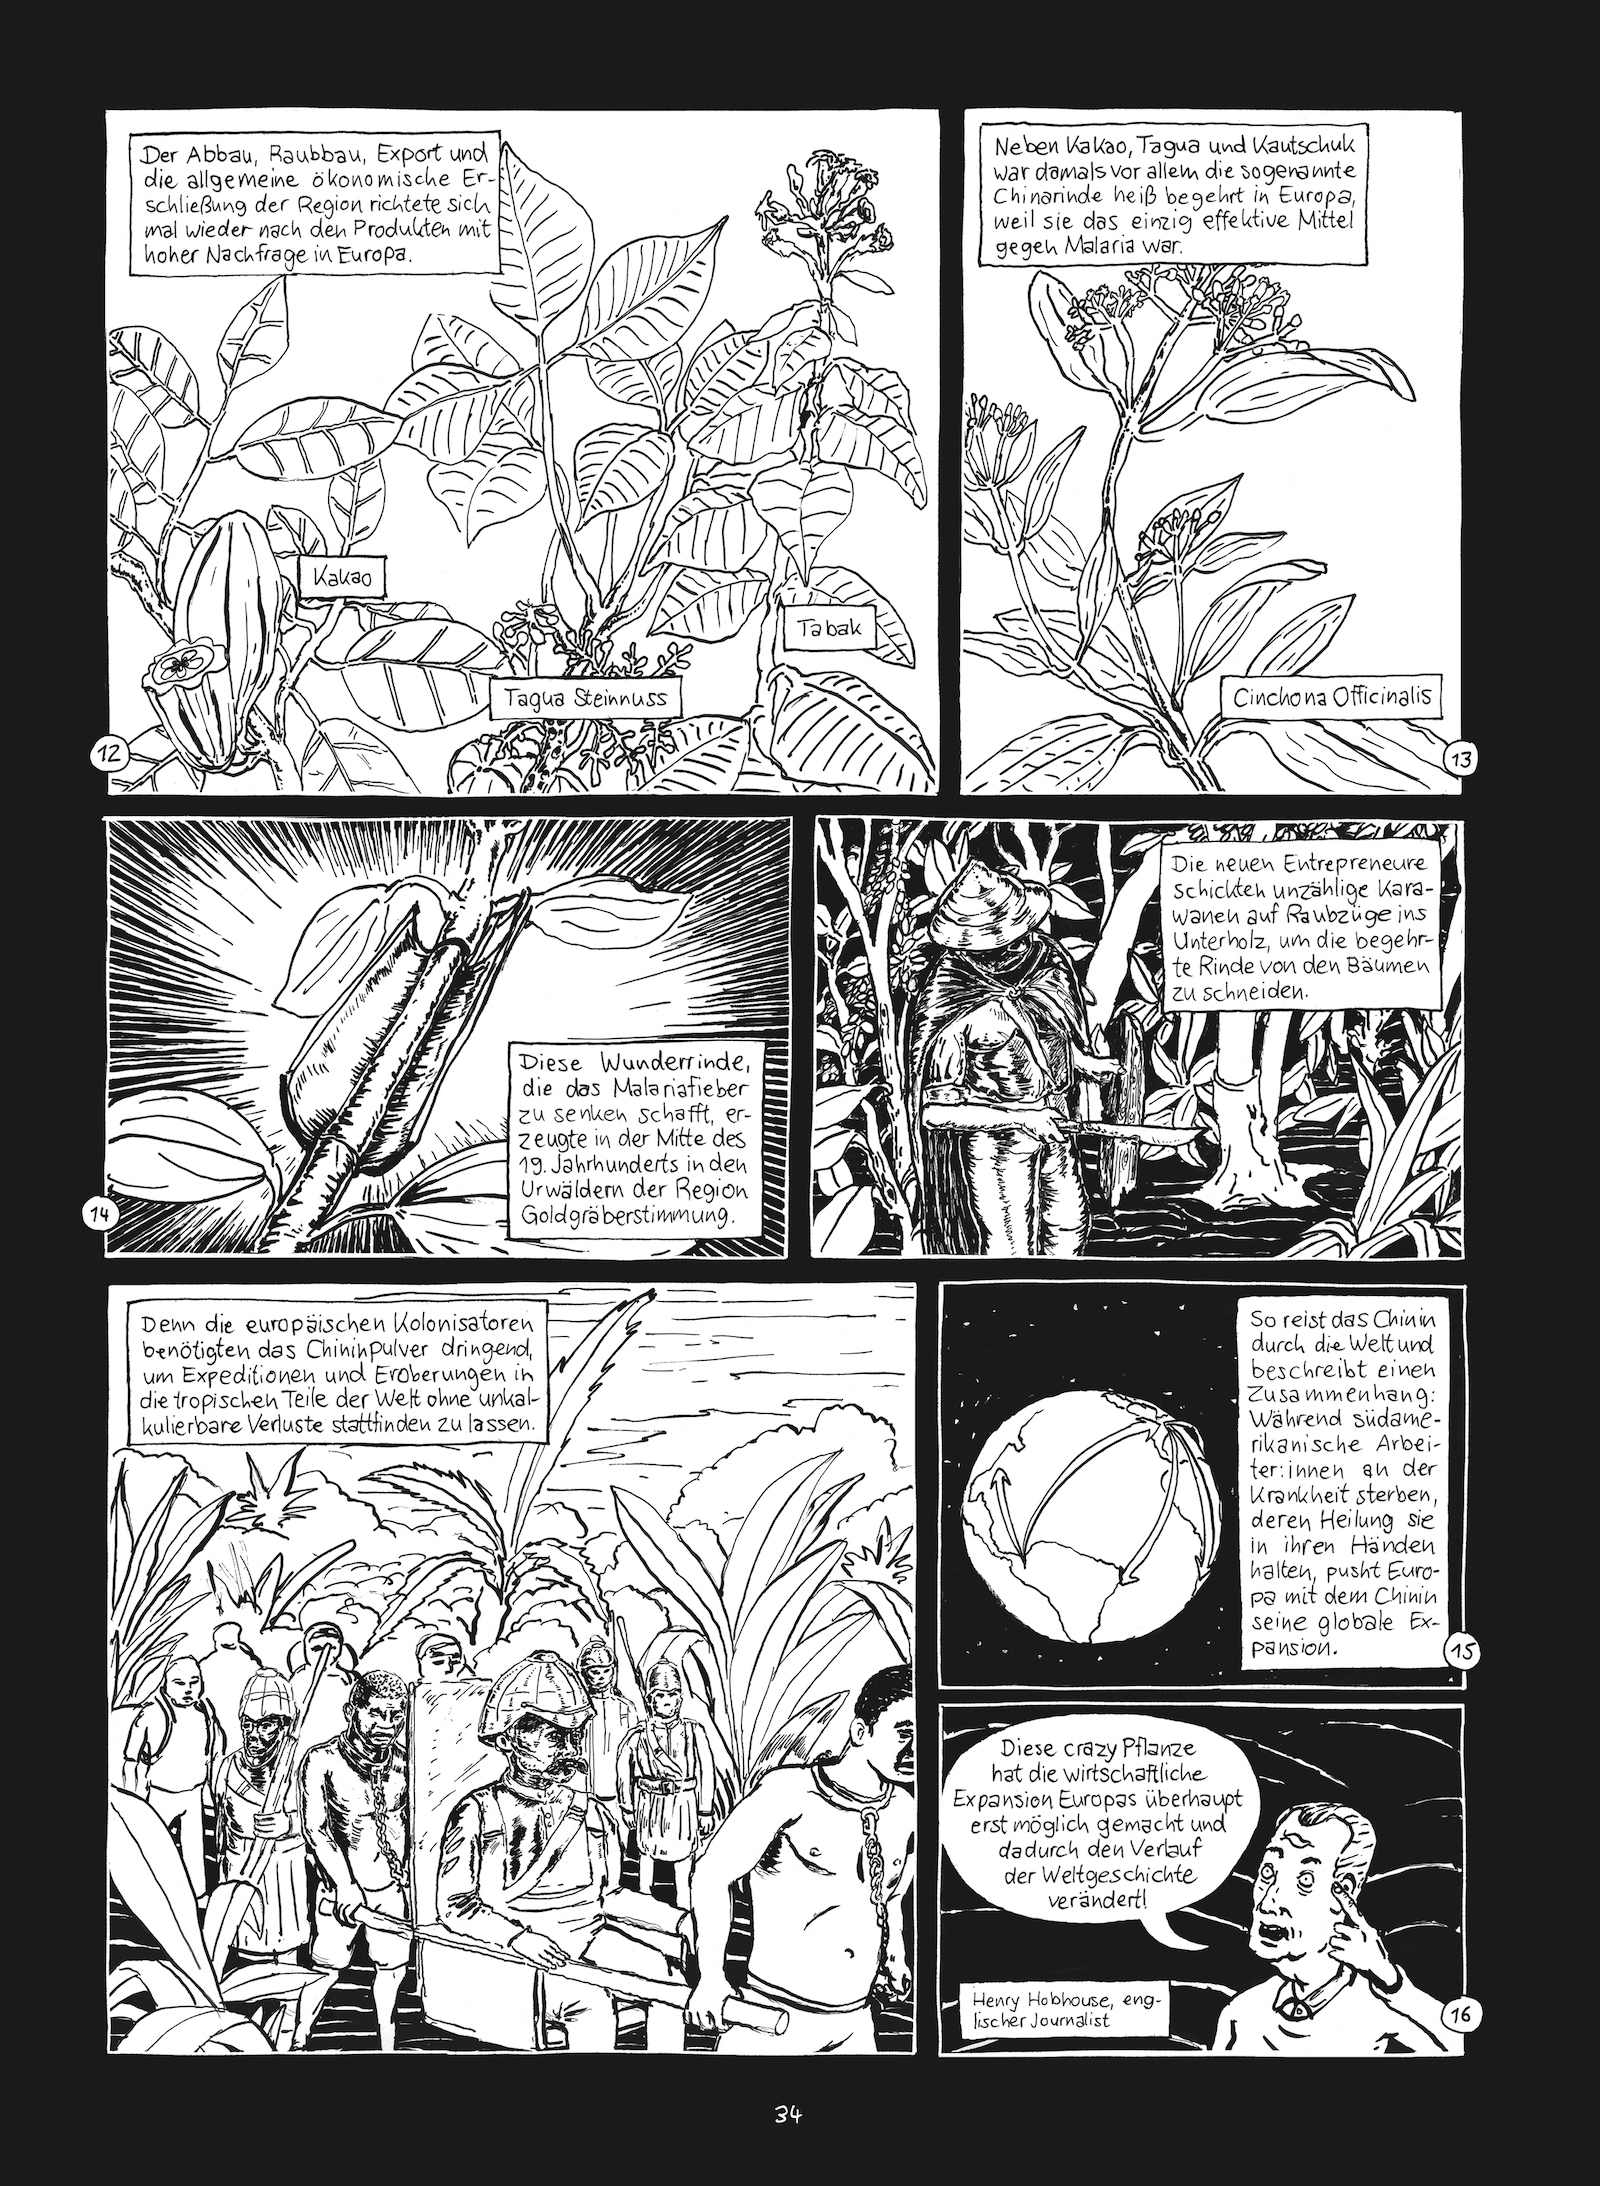 Seite 34 von Christian Diaz Orejarenas Comic "Otras Rayas"